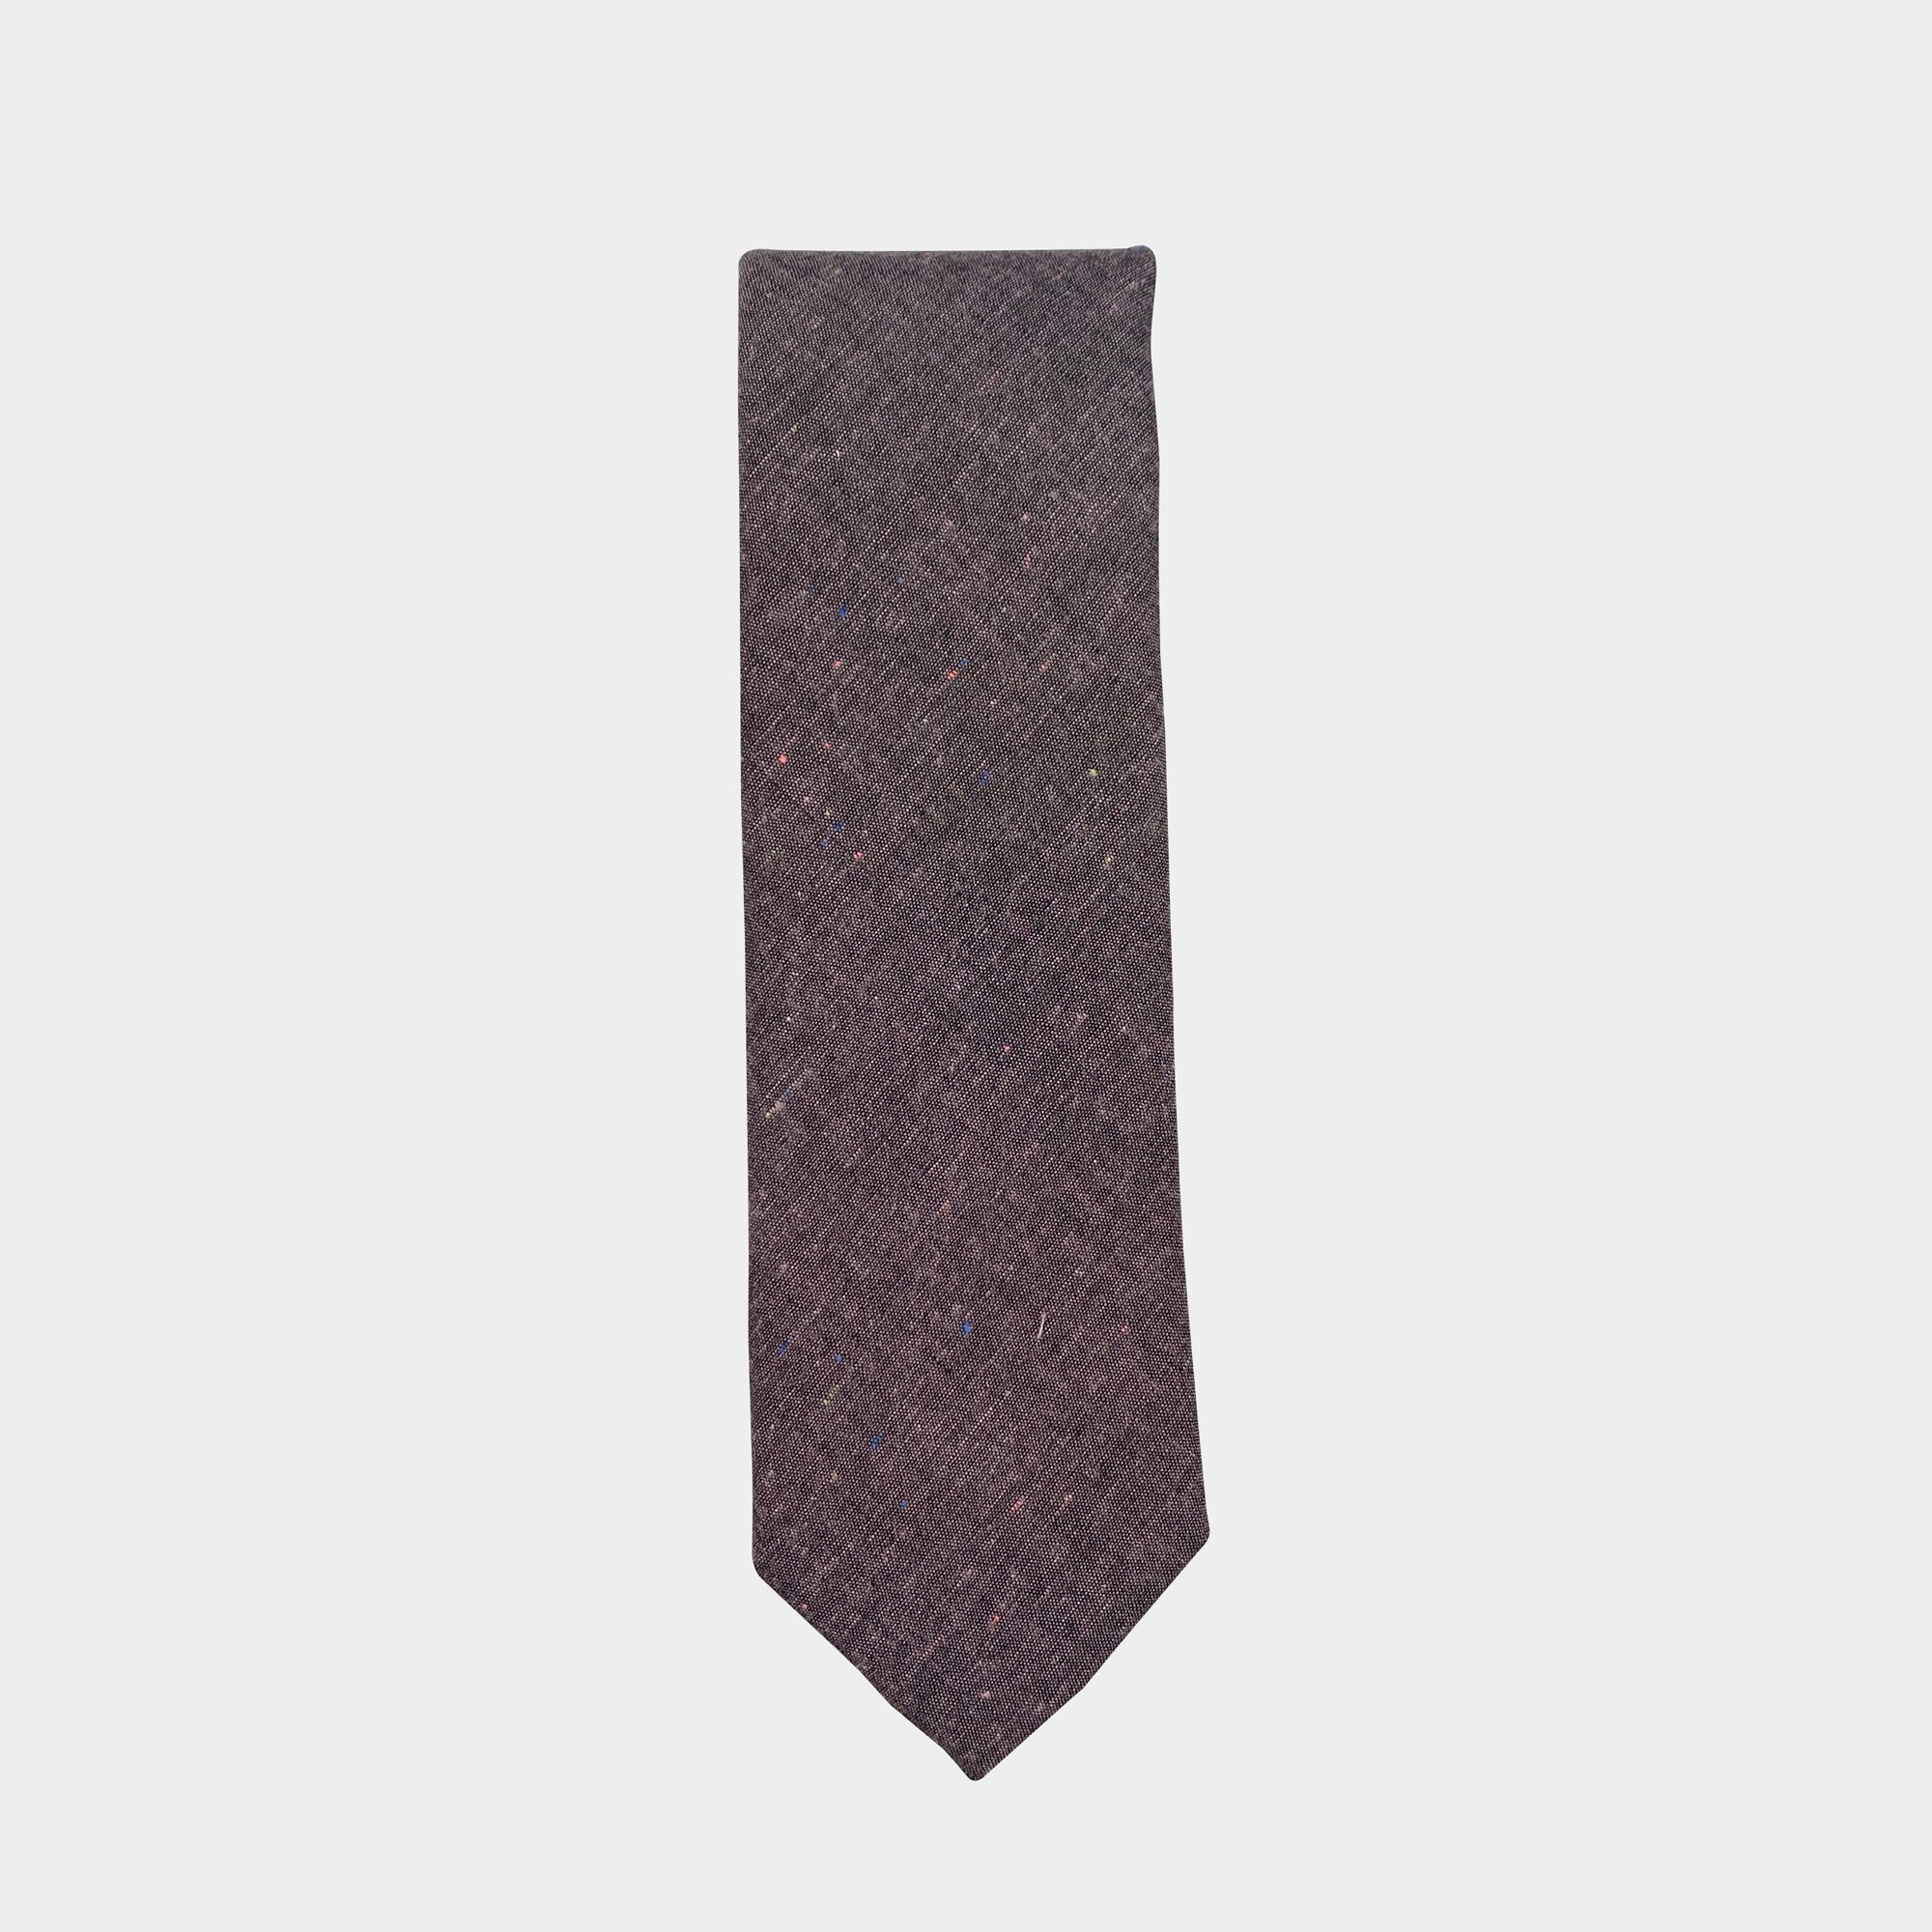 ASHBY - Men's Tie